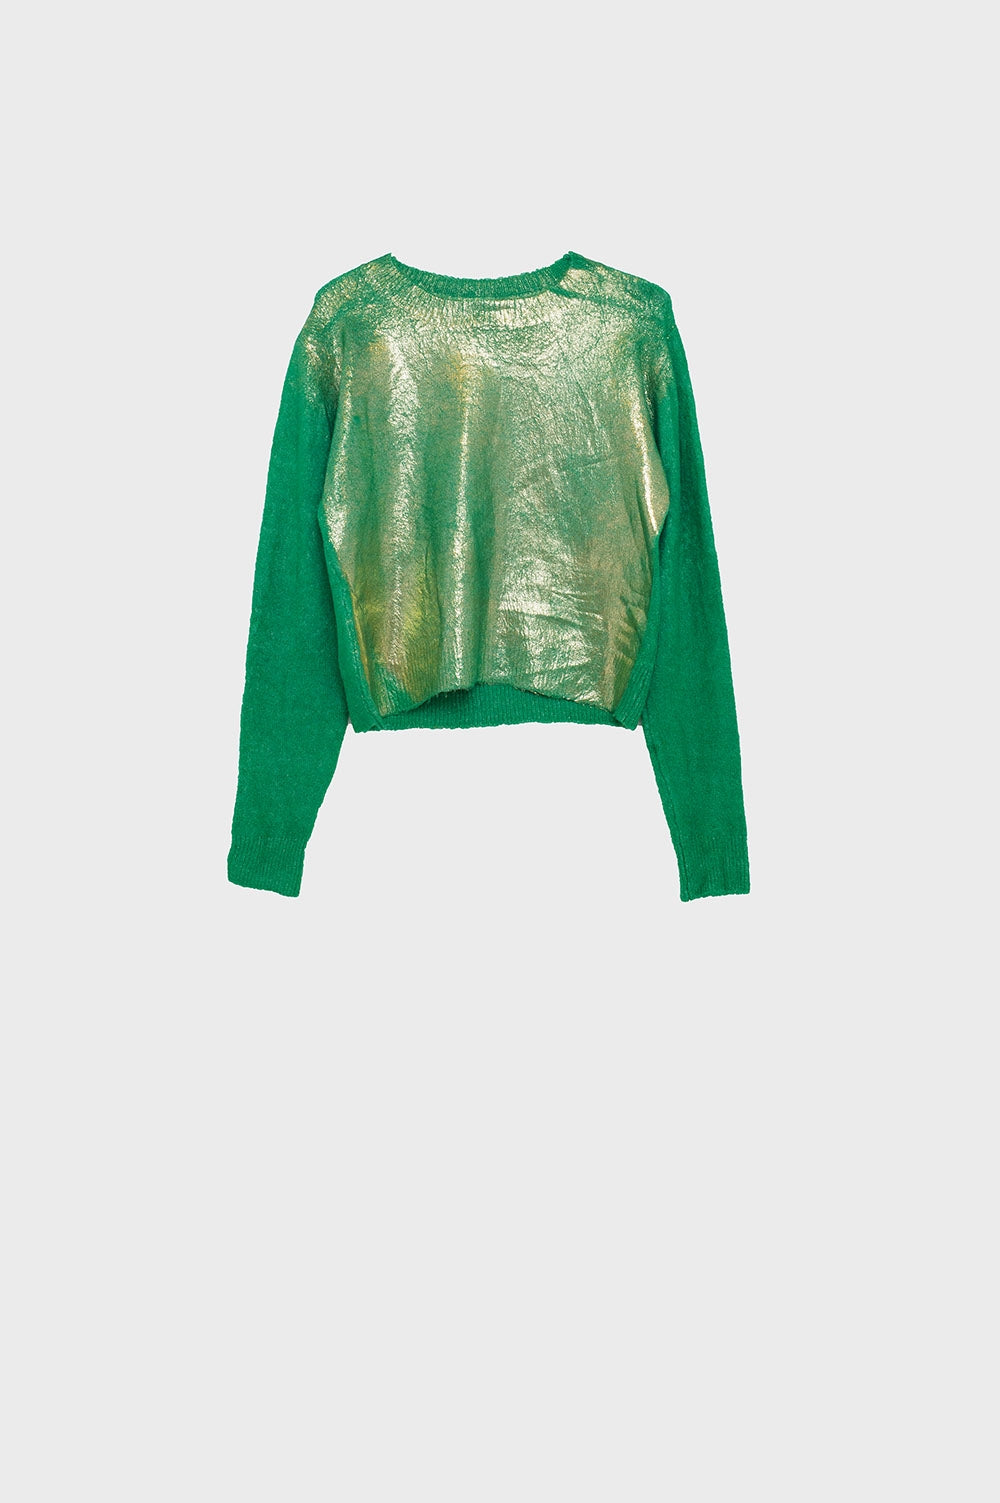 Q2 maglione verde con scollo rotondo e oro metallizzato